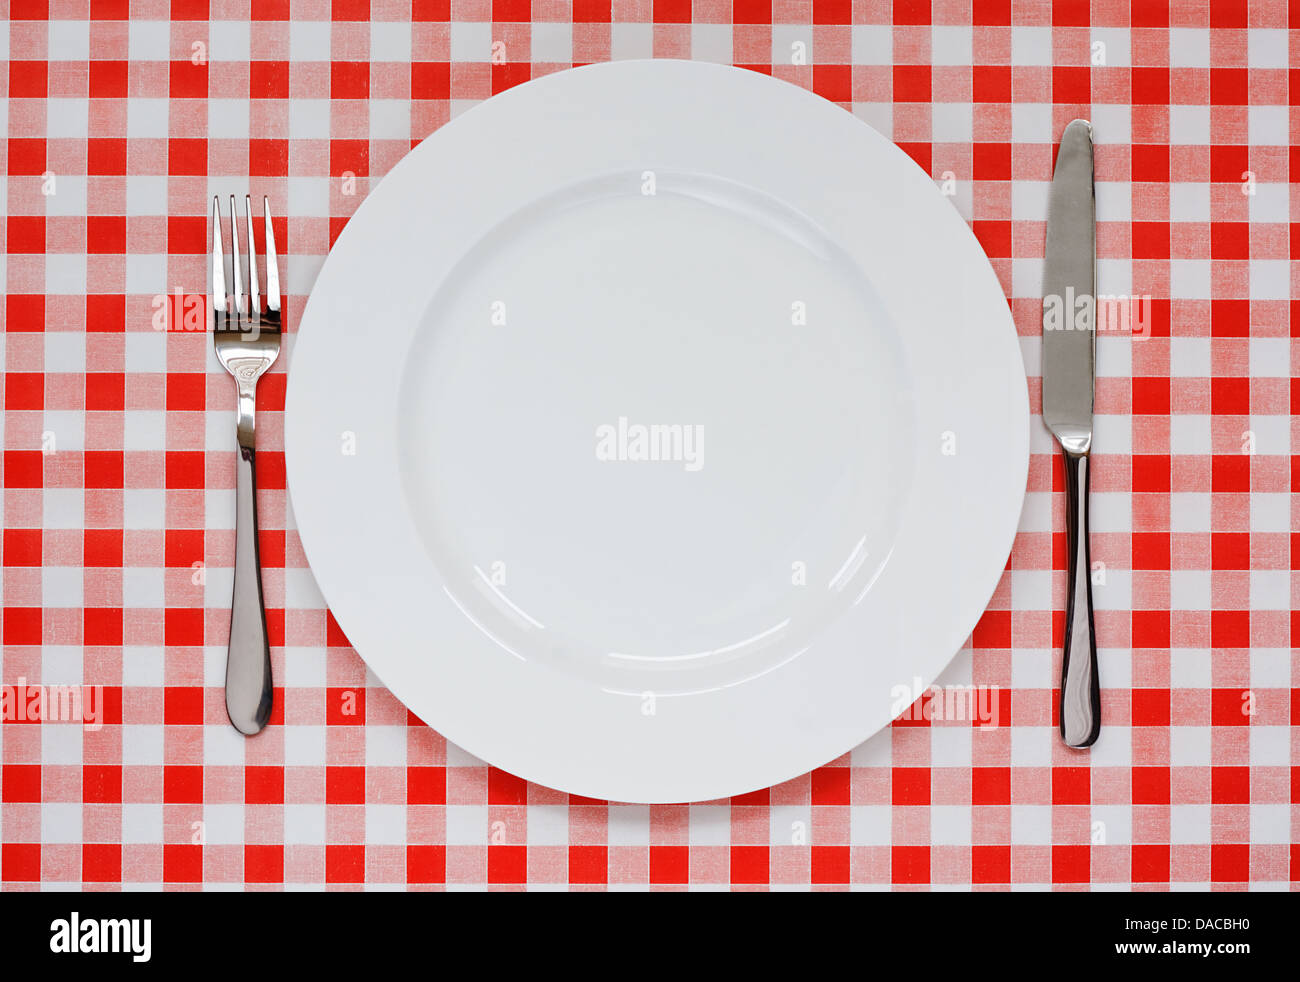 Réglage de la plaque vide avec la plaque, le couteau et la fourchette sur fond vichy rouge symbole populaire pour diners et cafés Banque D'Images